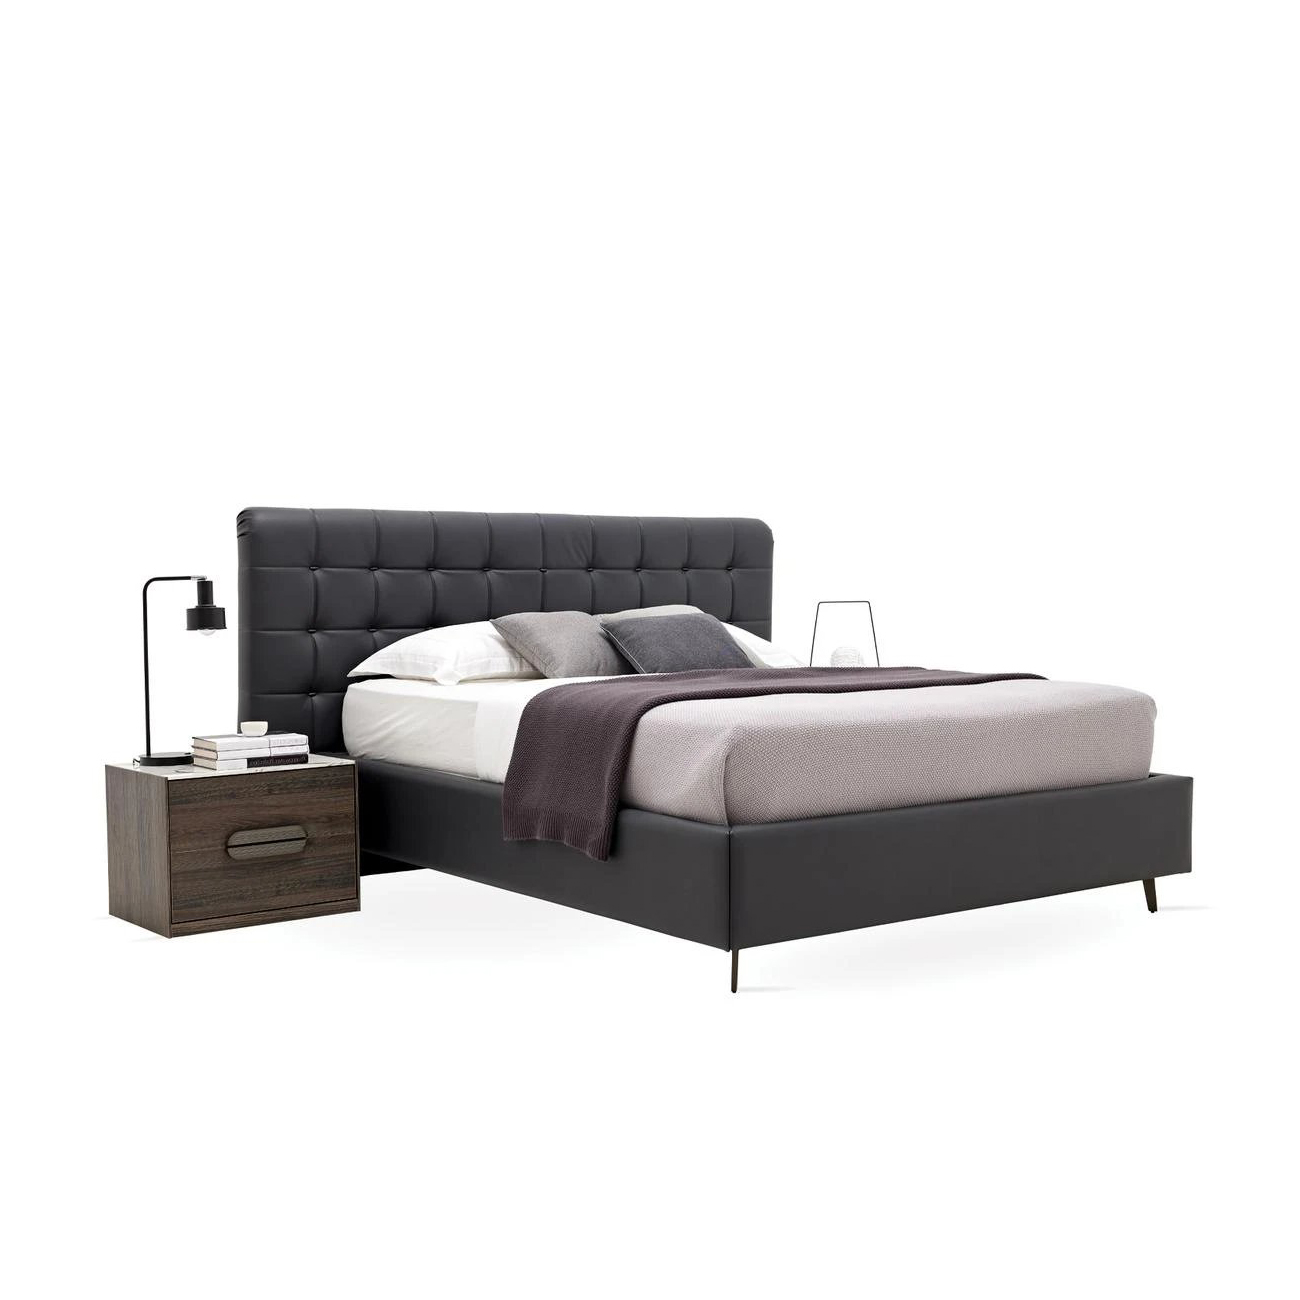 Кровать Enza Home Giorno, двуспальная, с подъемным механизмом, 180х200 см